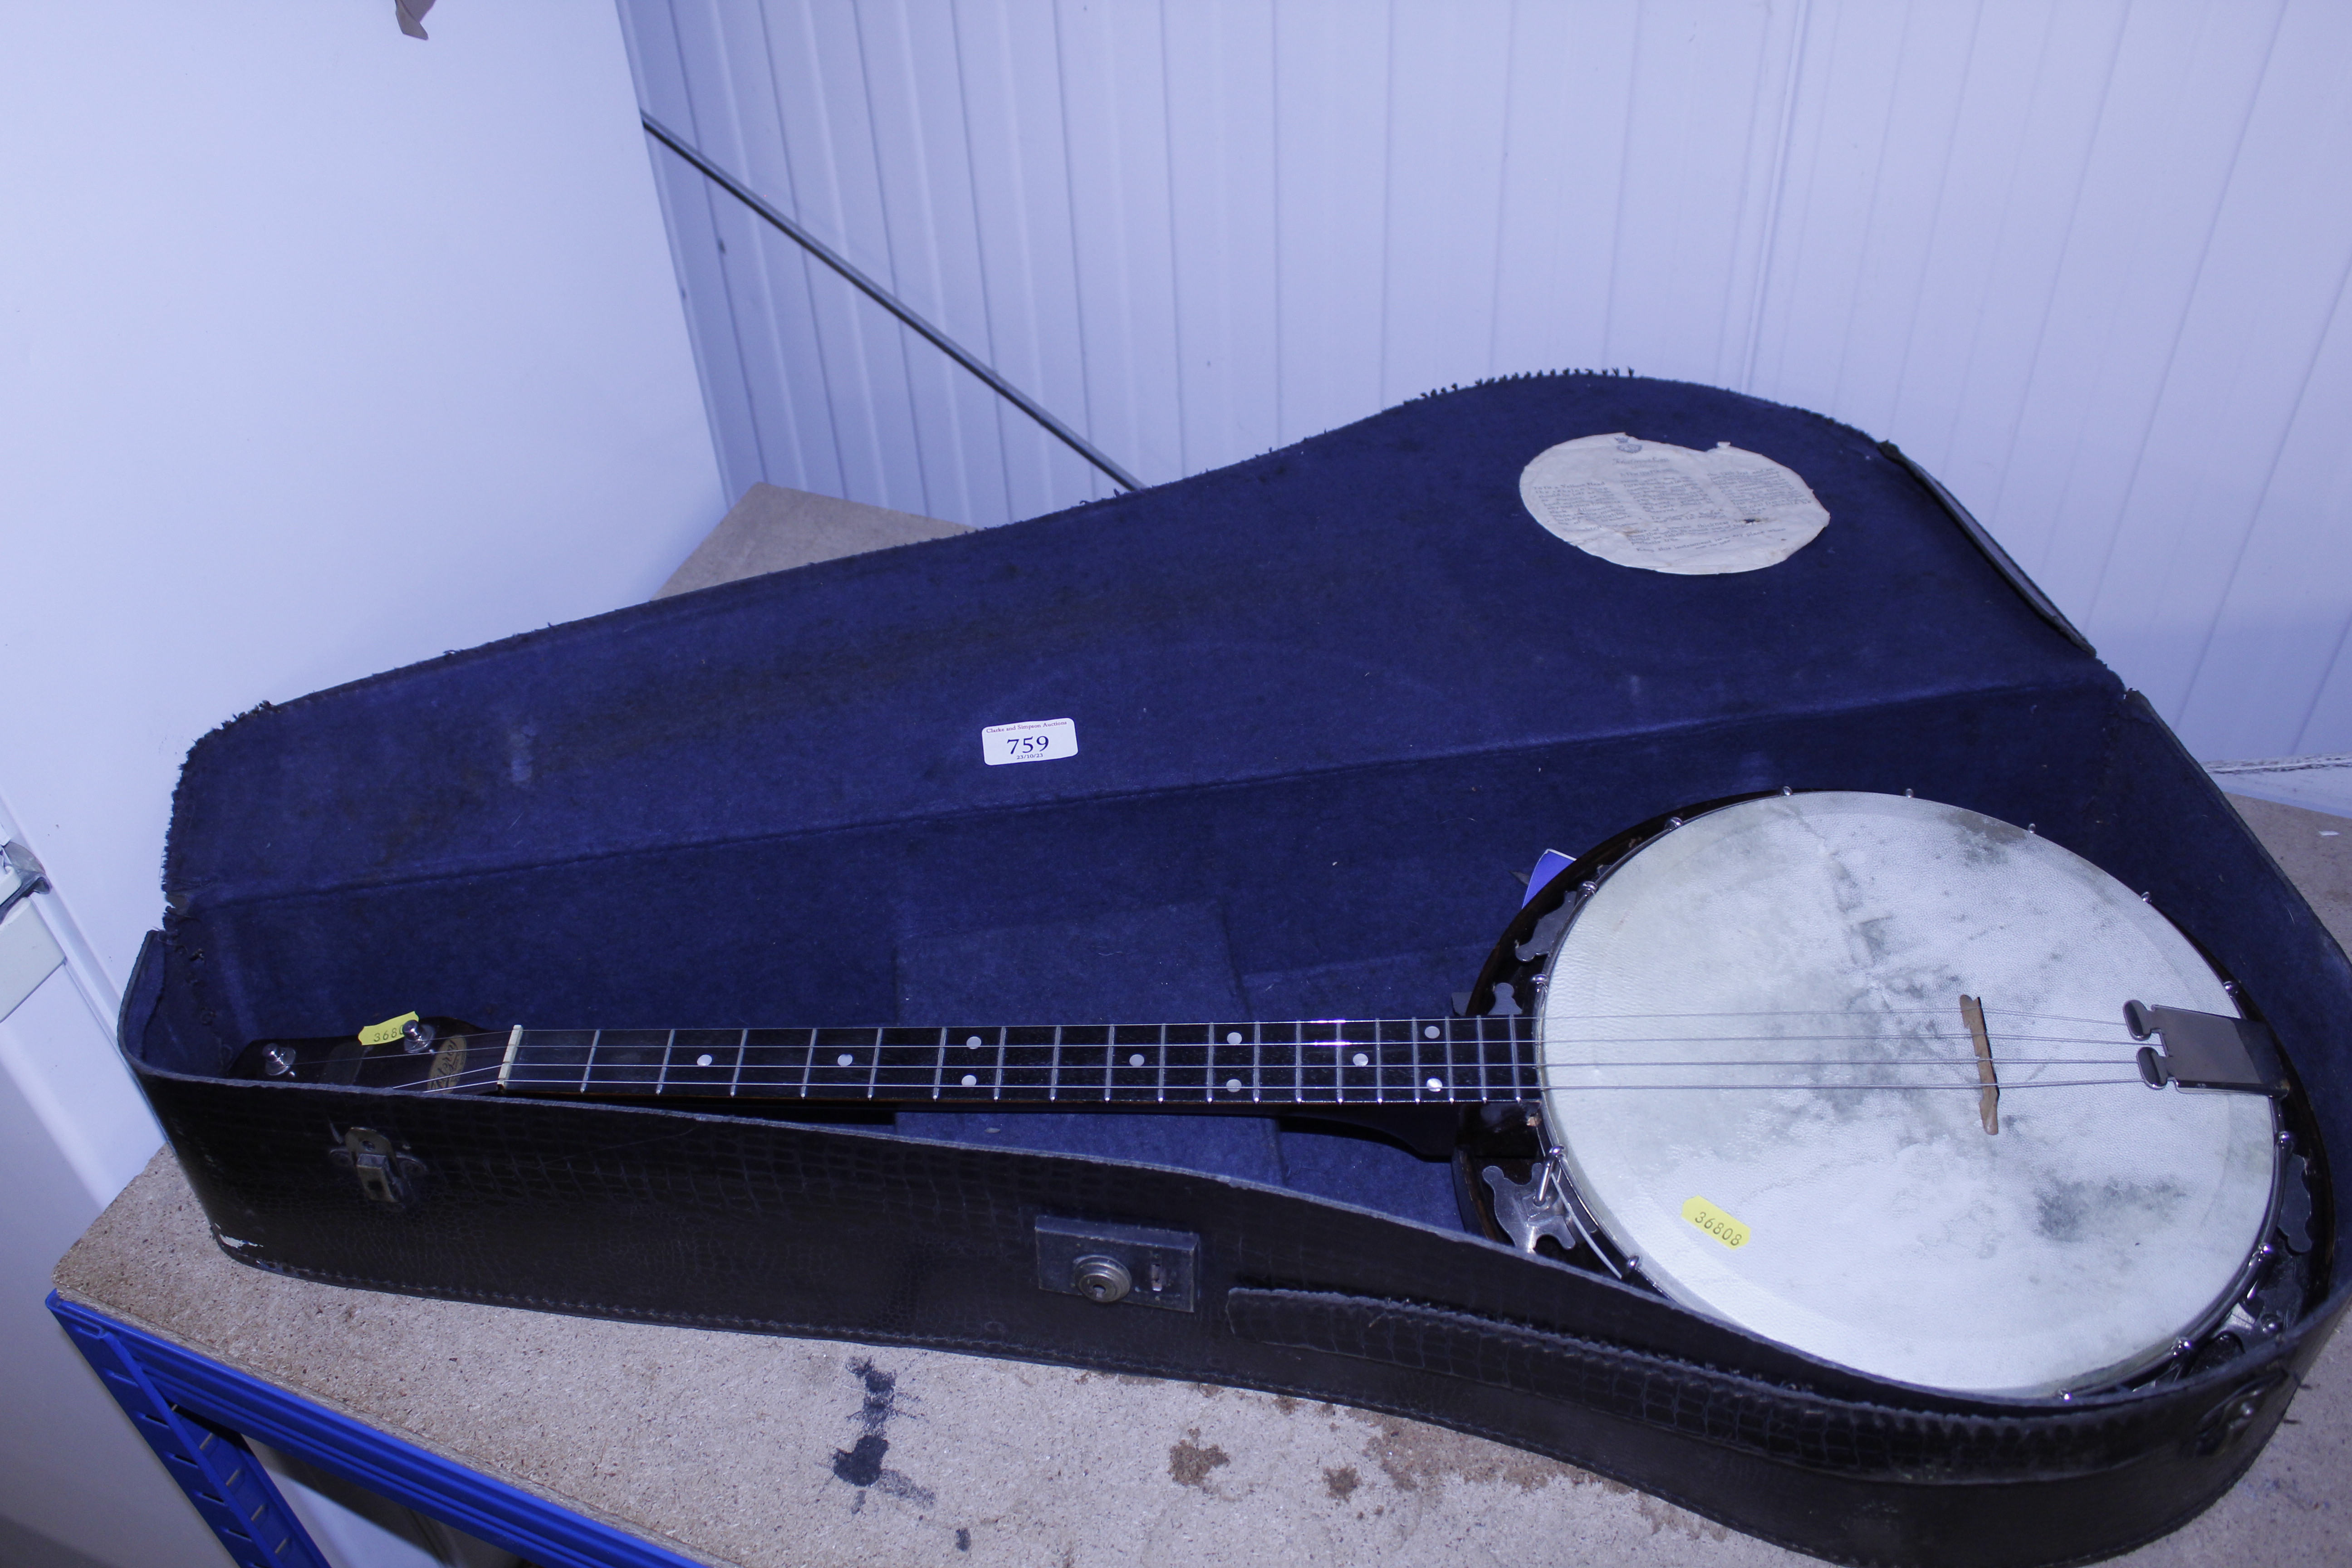 A Fitzroy banjo in case